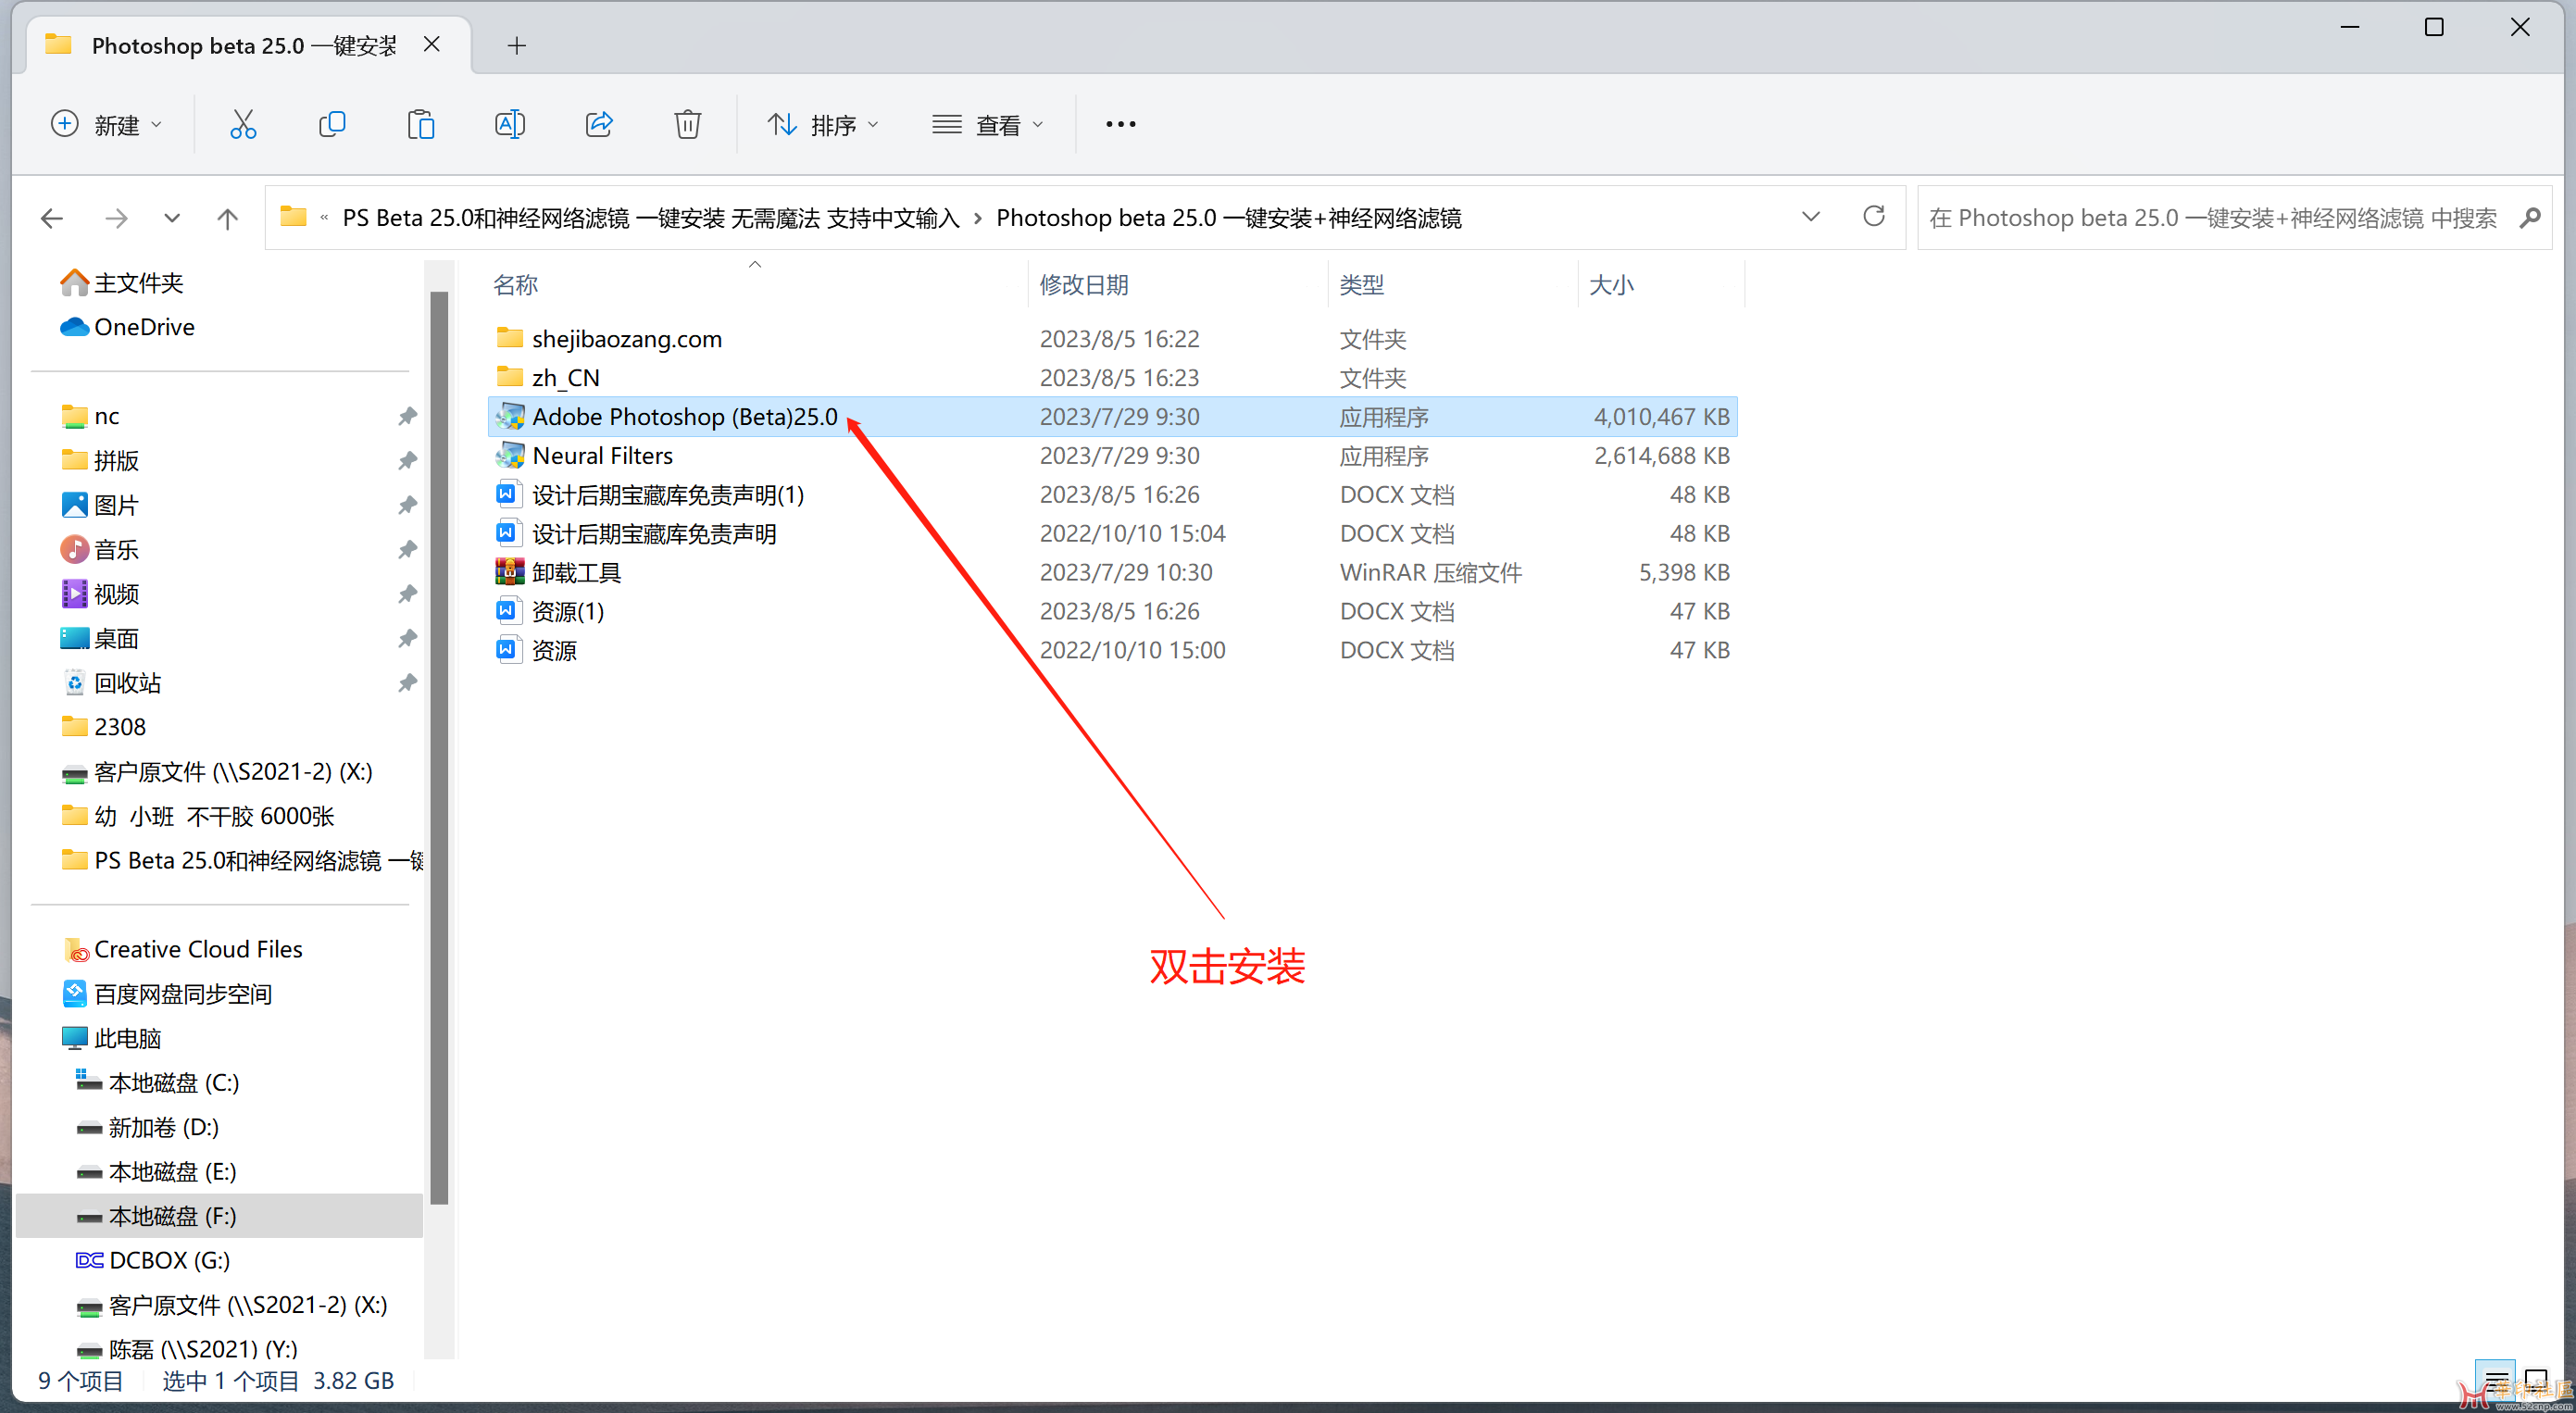 PS Beta 25.0和神经网络滤镜 一键安装 无需魔法 支持中文输入{tag}(1)